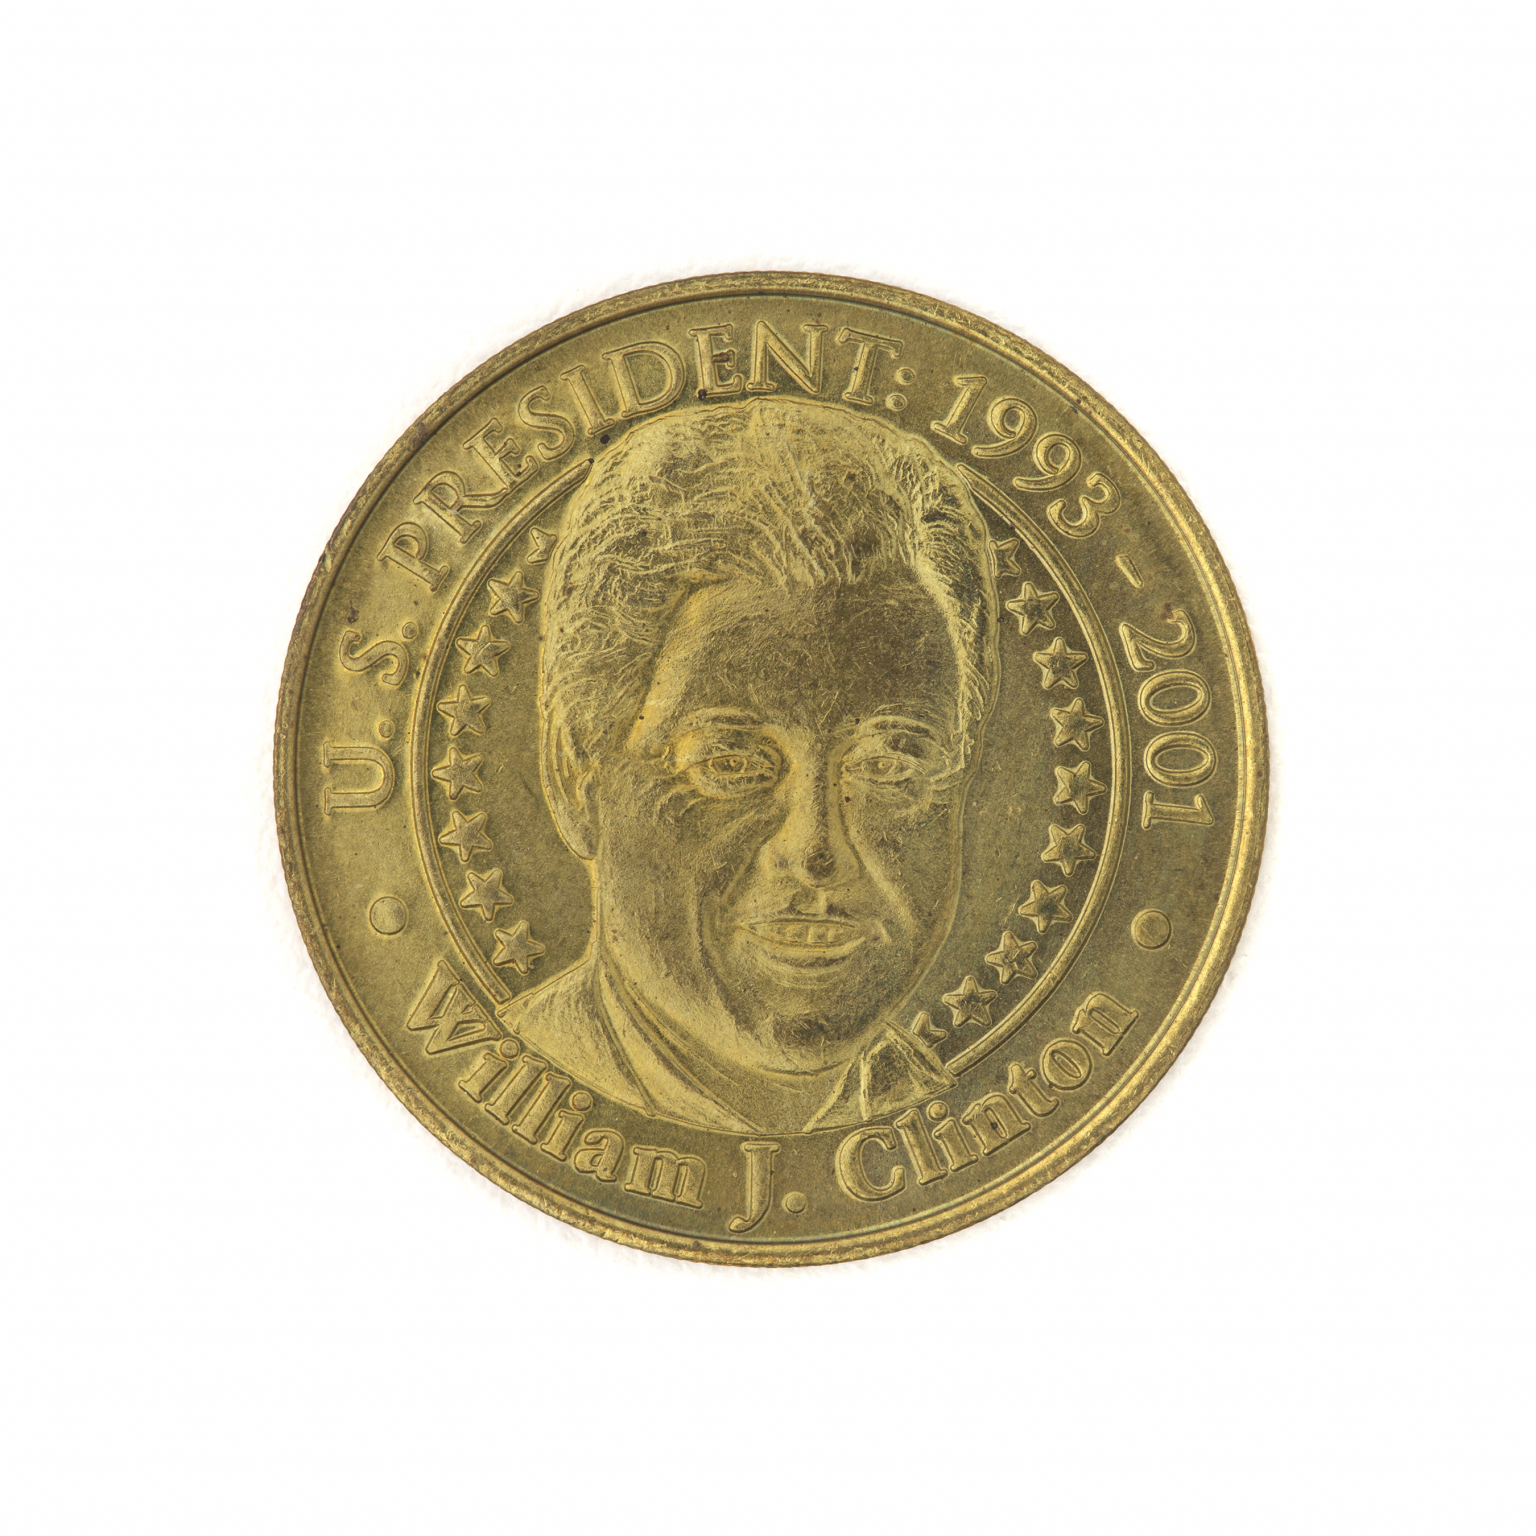 U.S. President Bill Clinton Collectible Coin